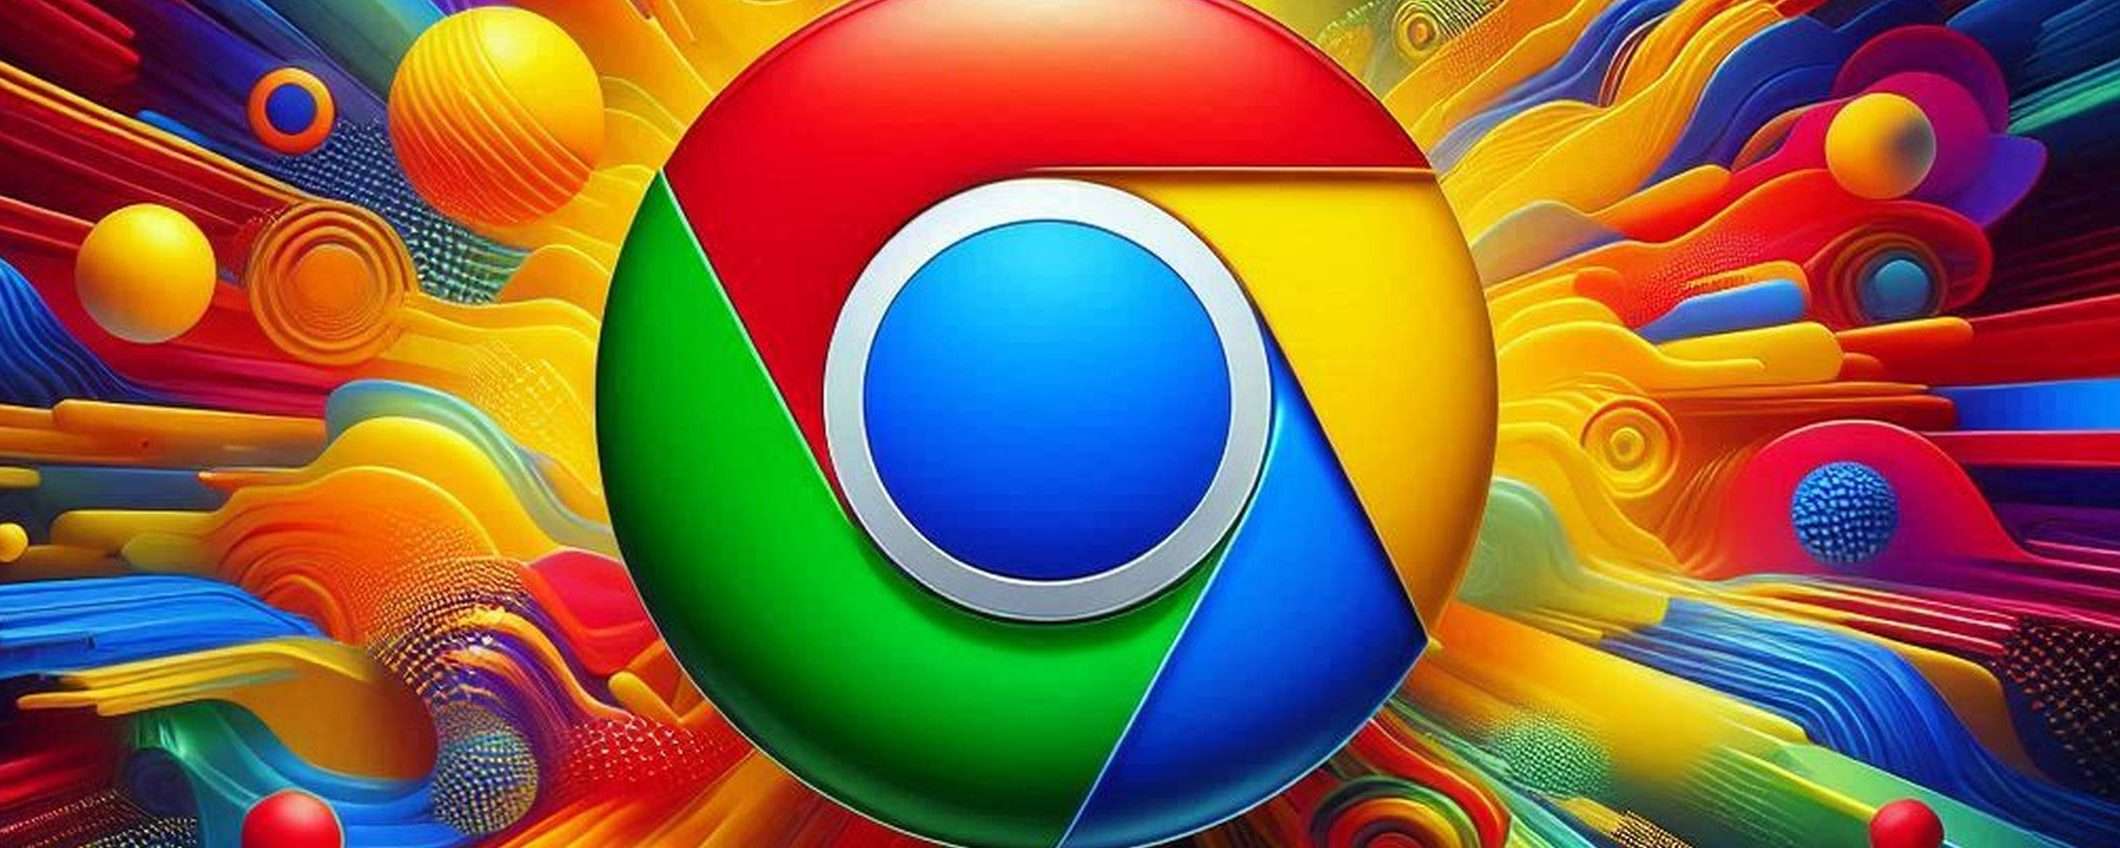 Chrome per Android: verifica identità sui siti